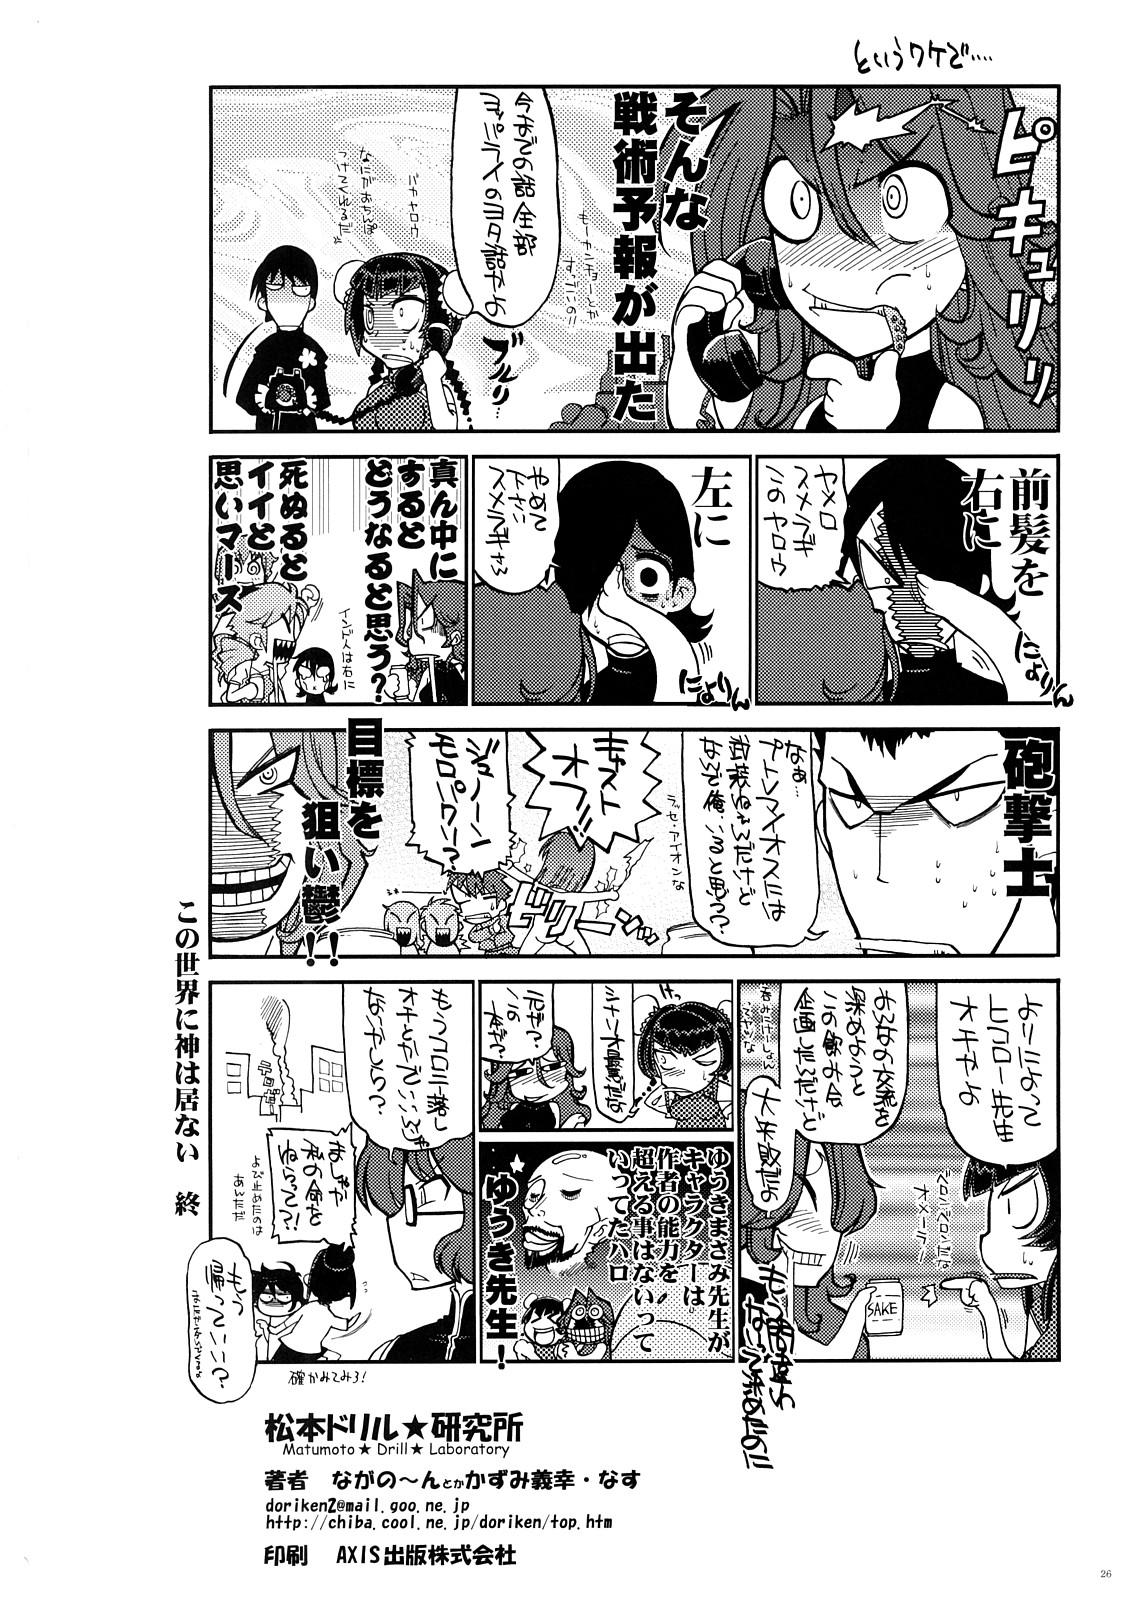 Hindi Kono Sekai ni Kami wa Inai - Gundam 00 Hd Porn - Page 25